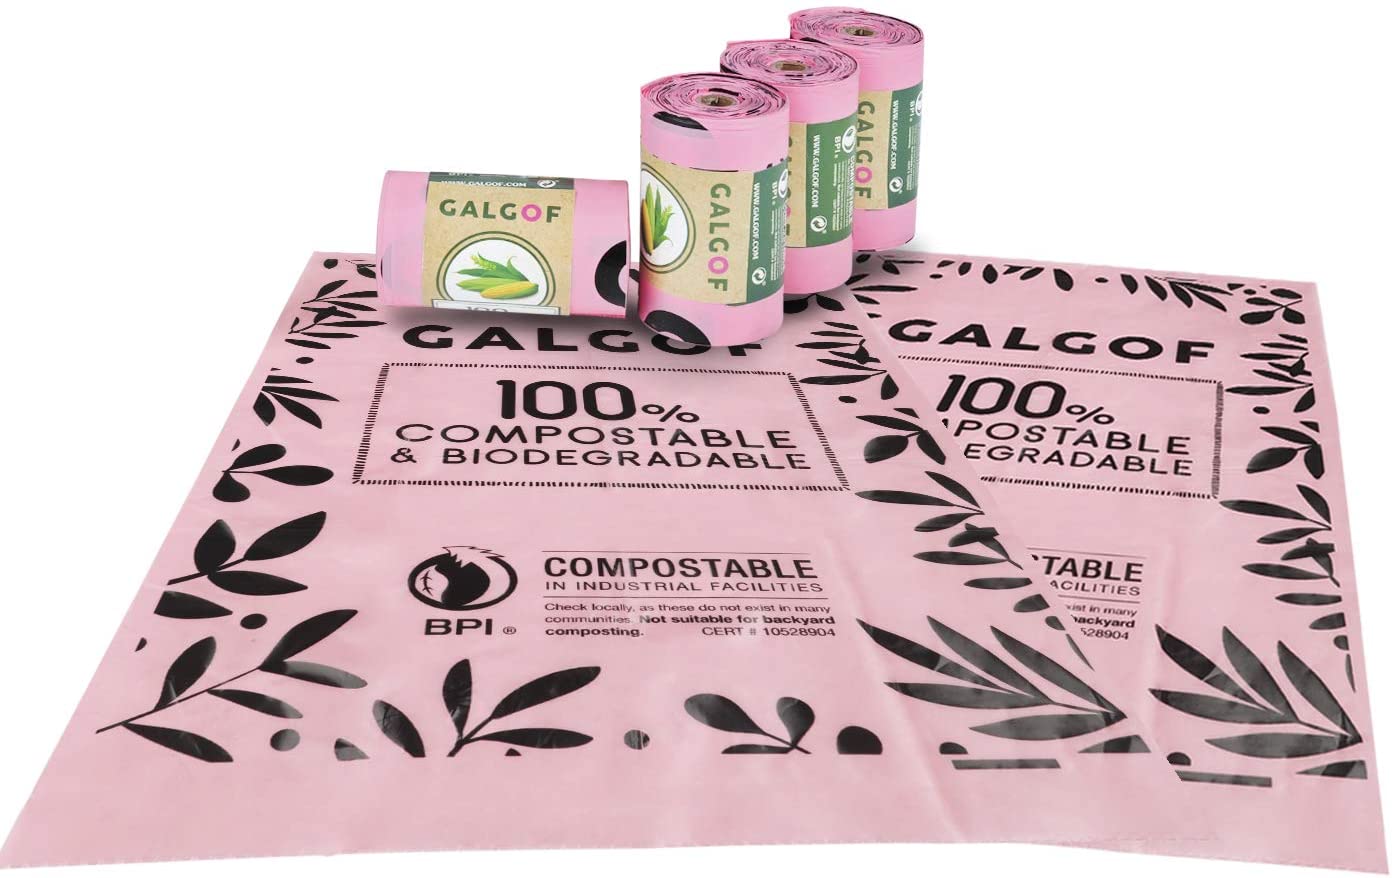  GALGOF Bolsas de Basura higiénicas y biodegradables para Perro + Dispensador. 10 Rollos perfumados, compostables y ecológicos para residuos y excrementos de Mascotas (180 uds) 